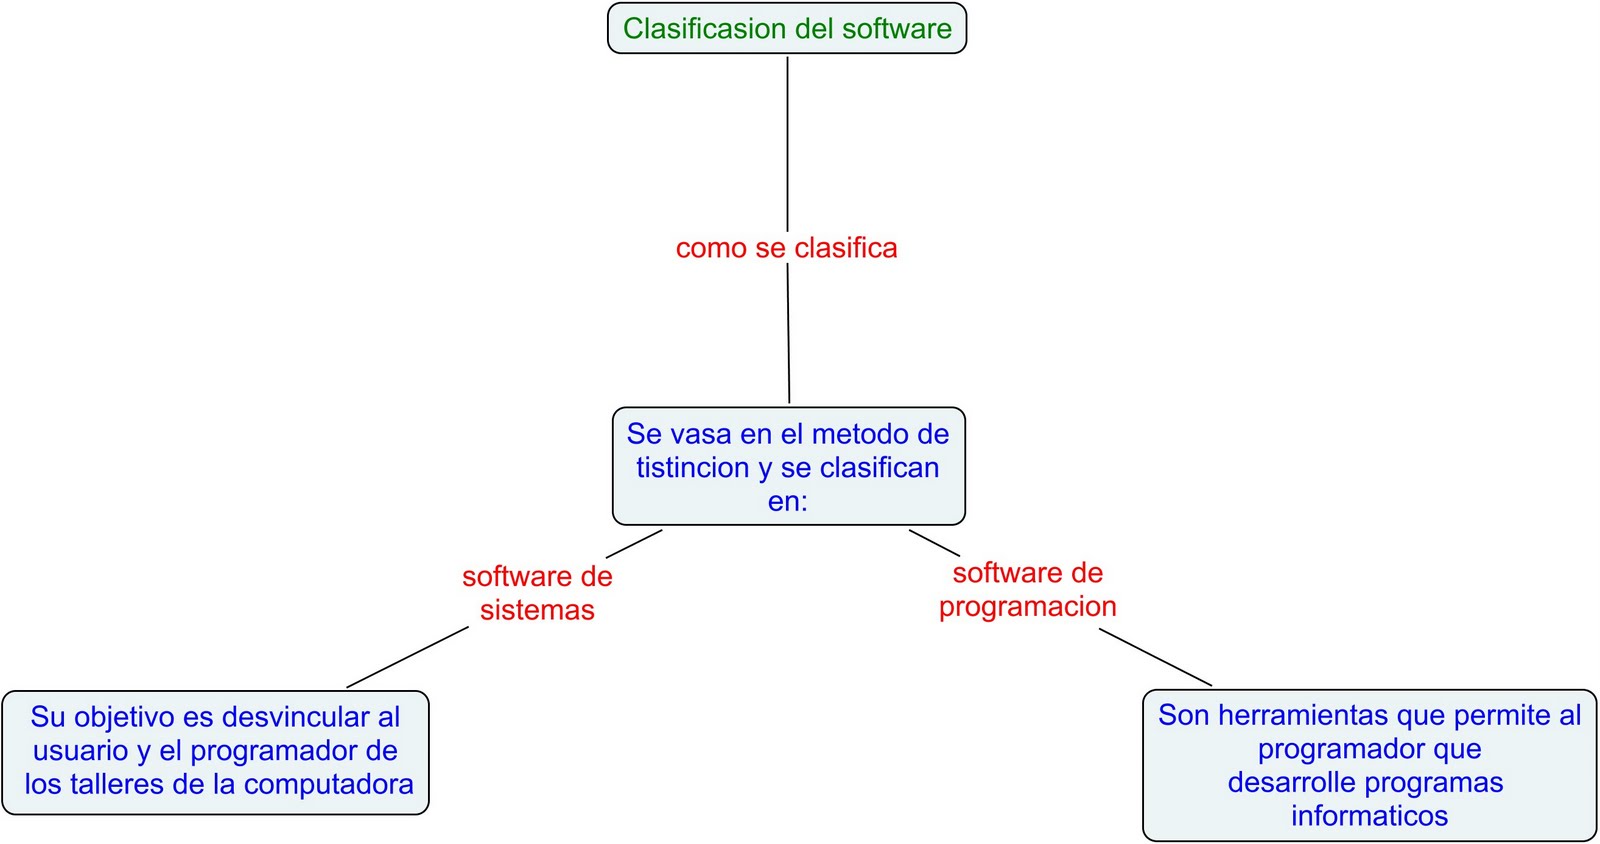 pros.deinforpormediosdig clasificación del software